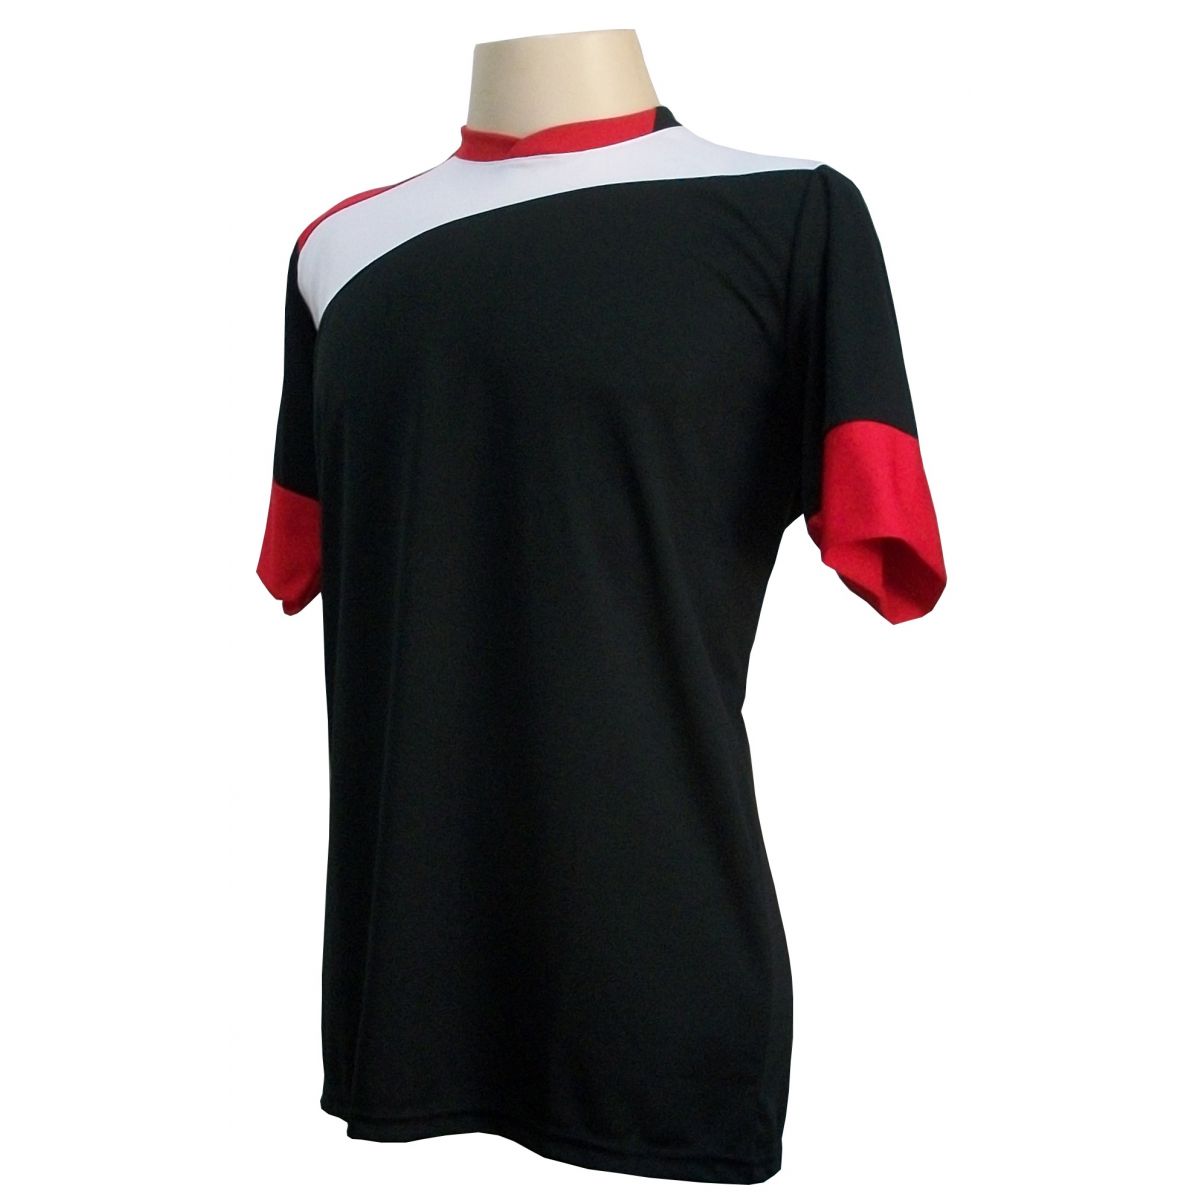 Uniforme Esportivo com 14 camisas modelo Sporting Preto/Branco/Vermelho + 14 calções modelo Copa Vermelho/Branco + Brindes